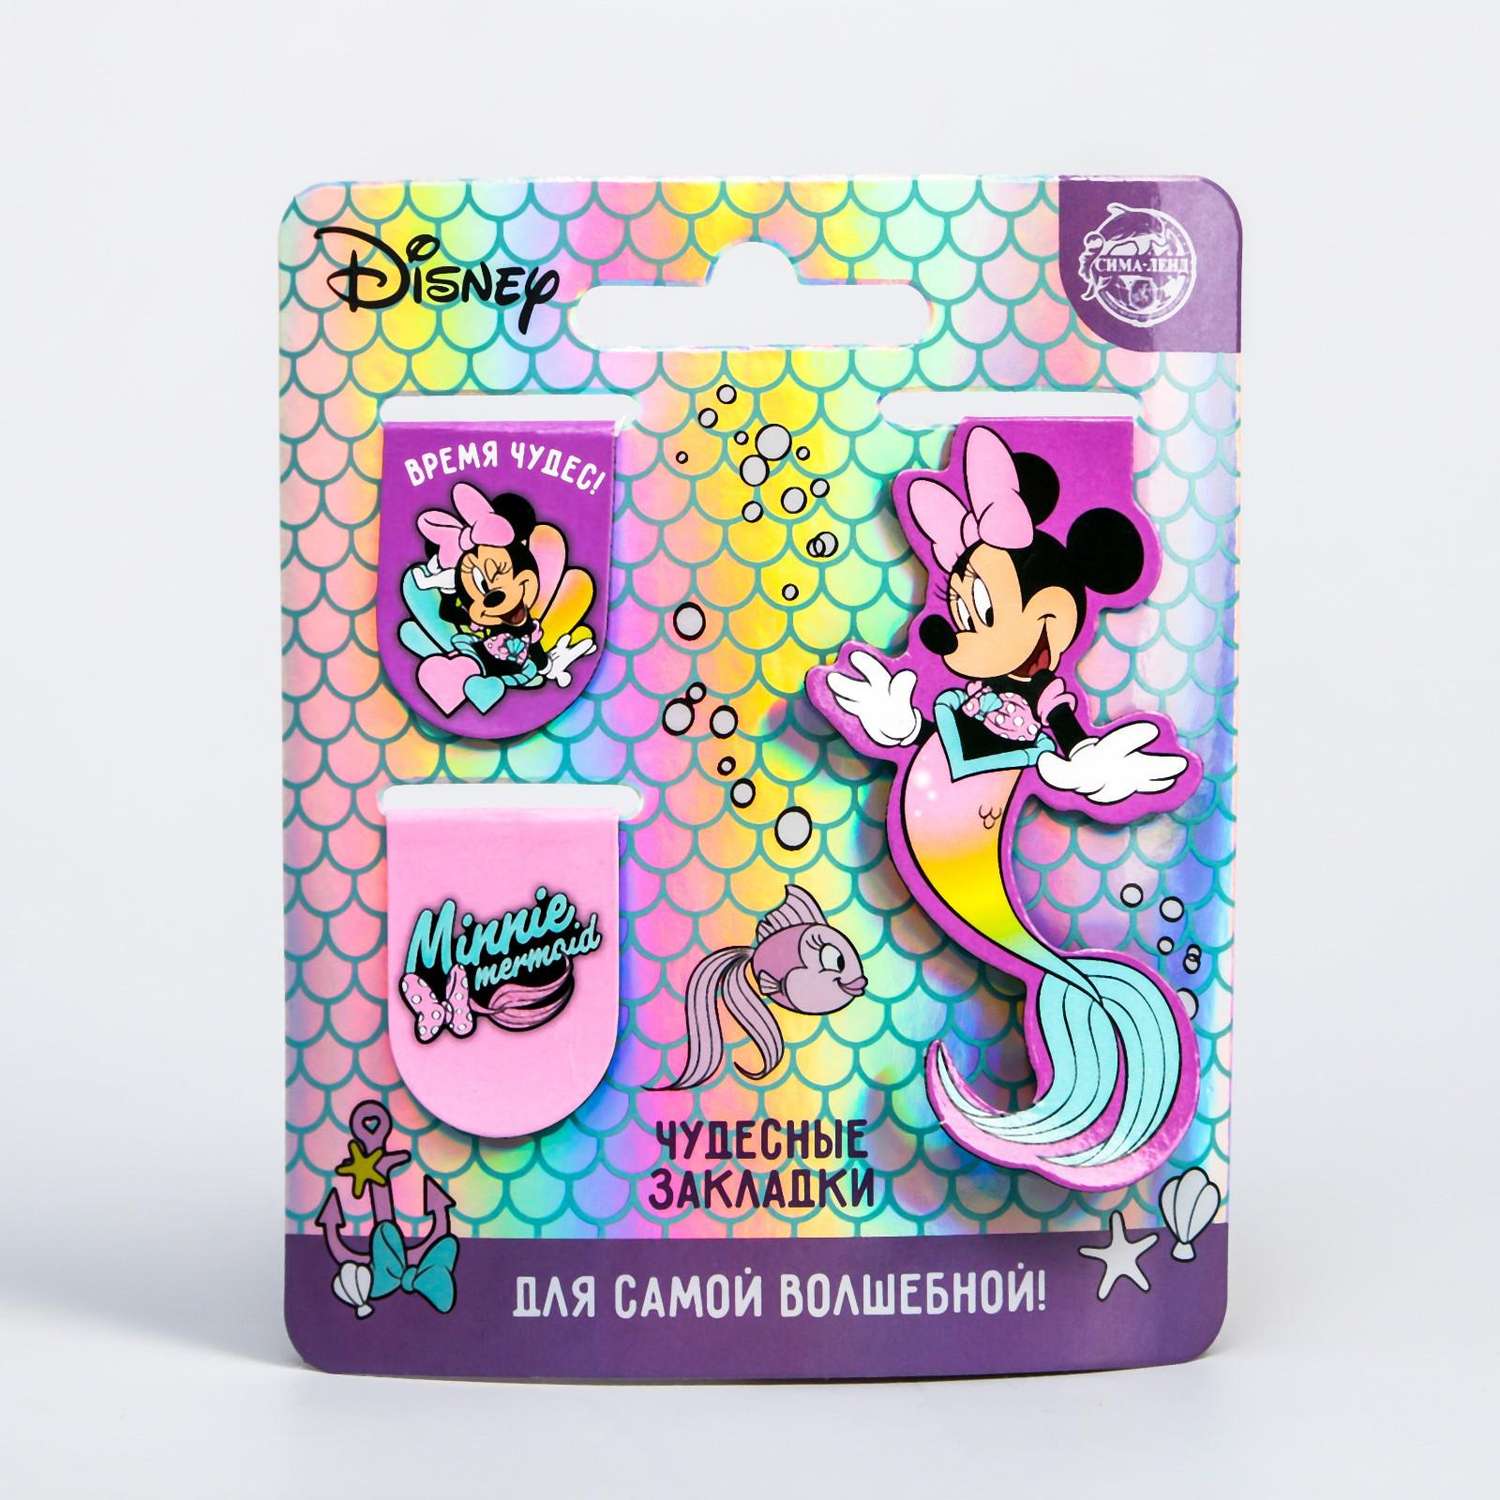 Открытка Disney с магнитными закладками «Для самой волшебной» Минни Маус 3 шт - фото 1